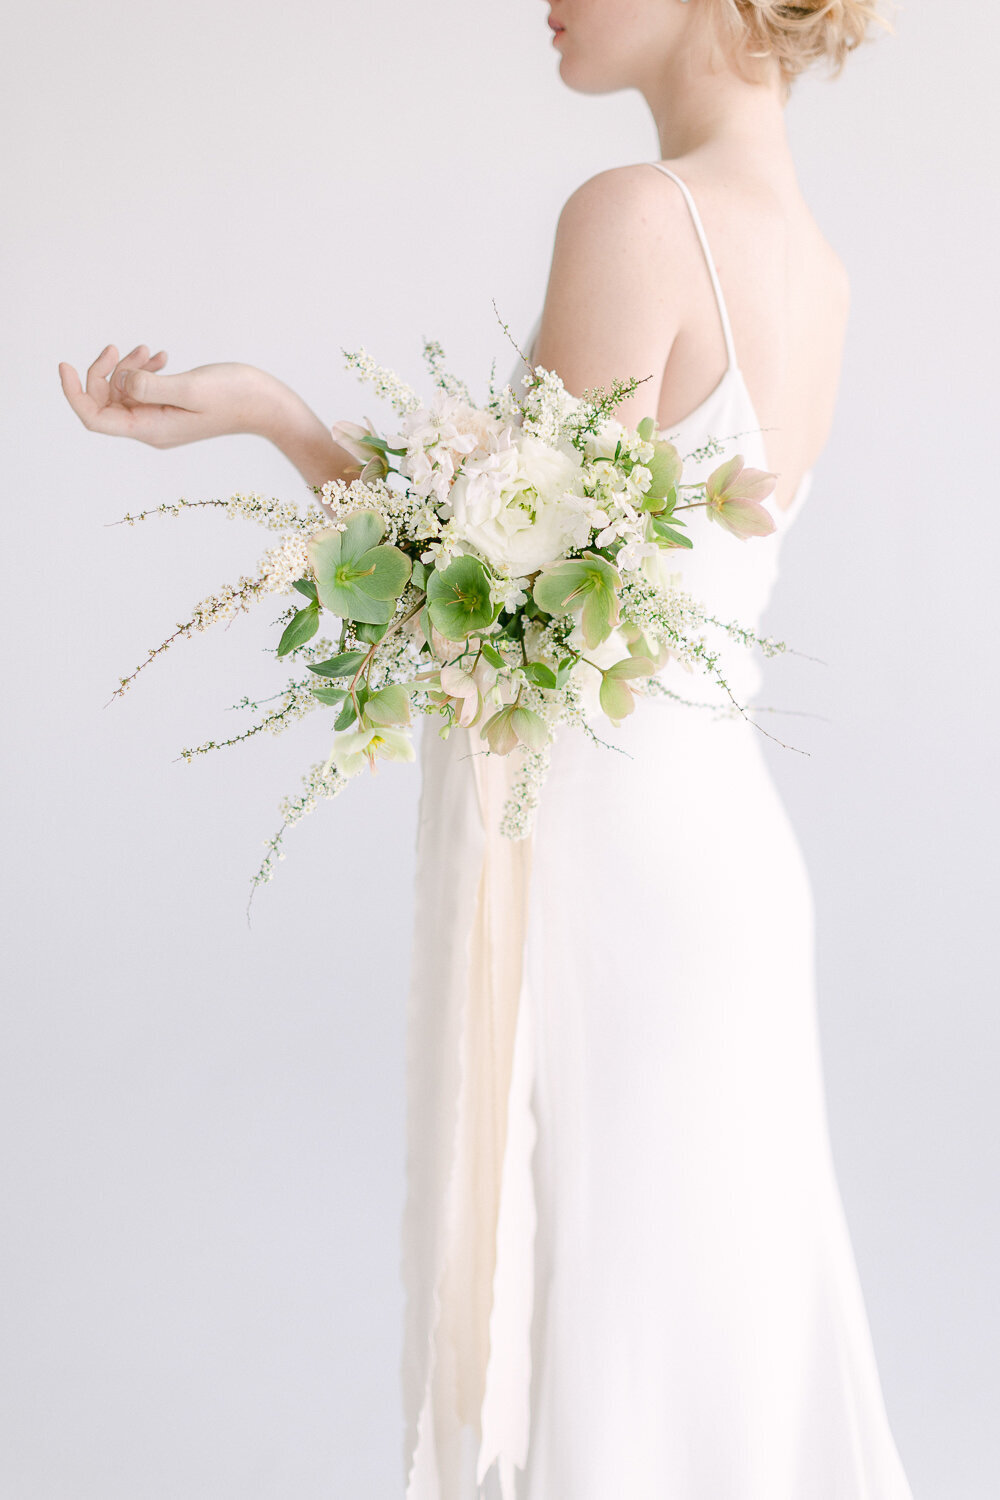 beautiful wedding bouquet - Minimalistic elegant style - Juno Photo